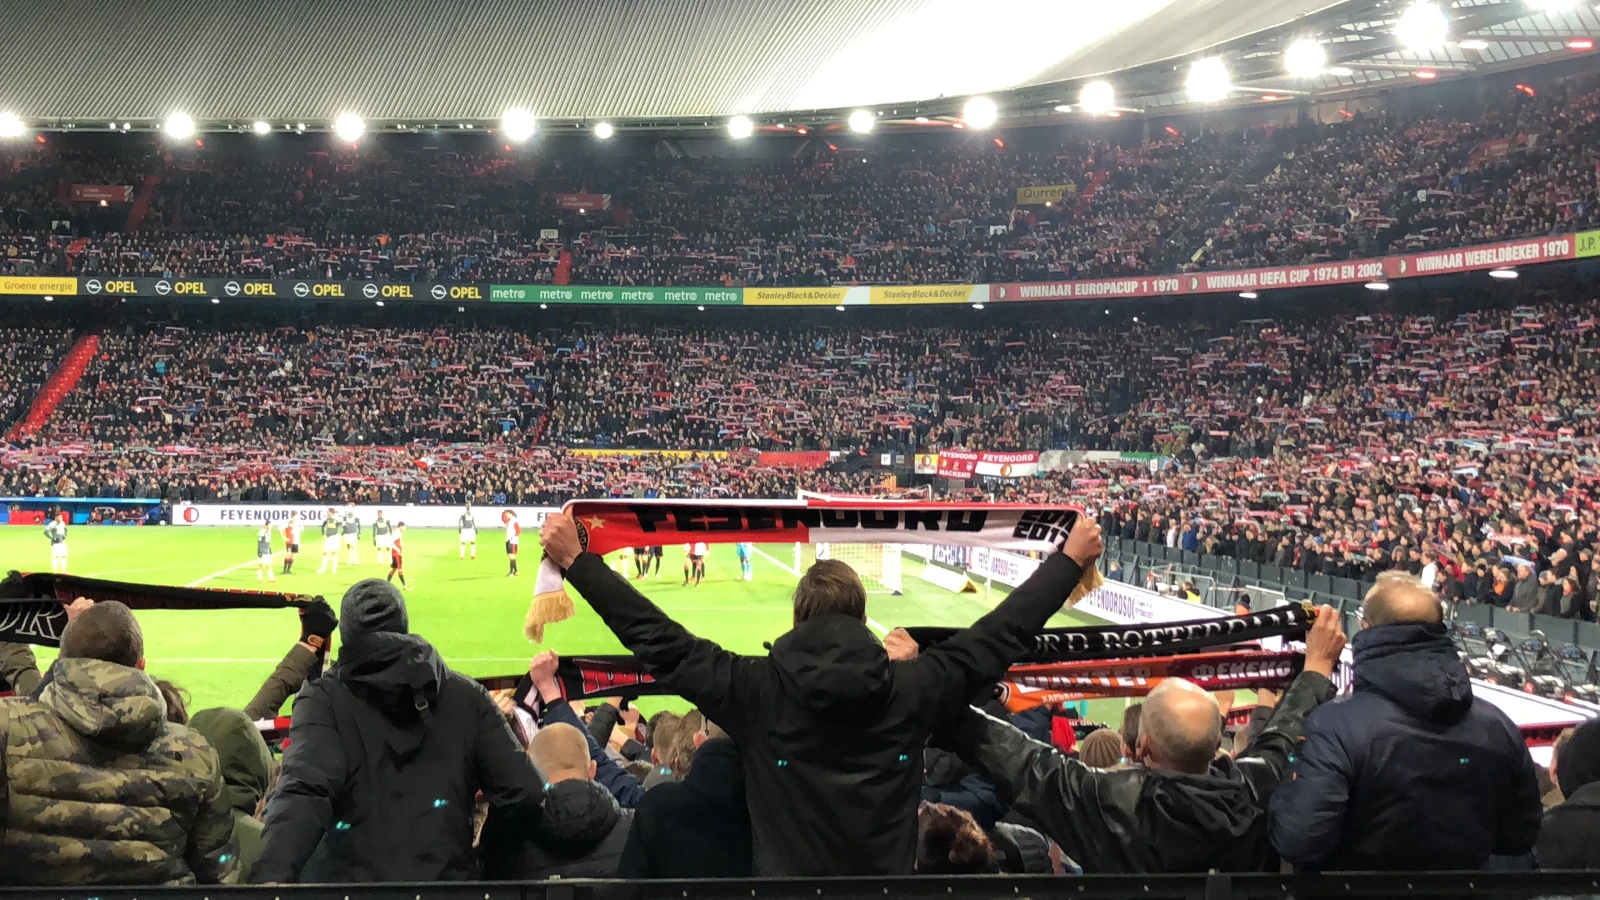 Wedstrijd tussen Feyenoord en CSKA Moskou live te zien op 'open net'